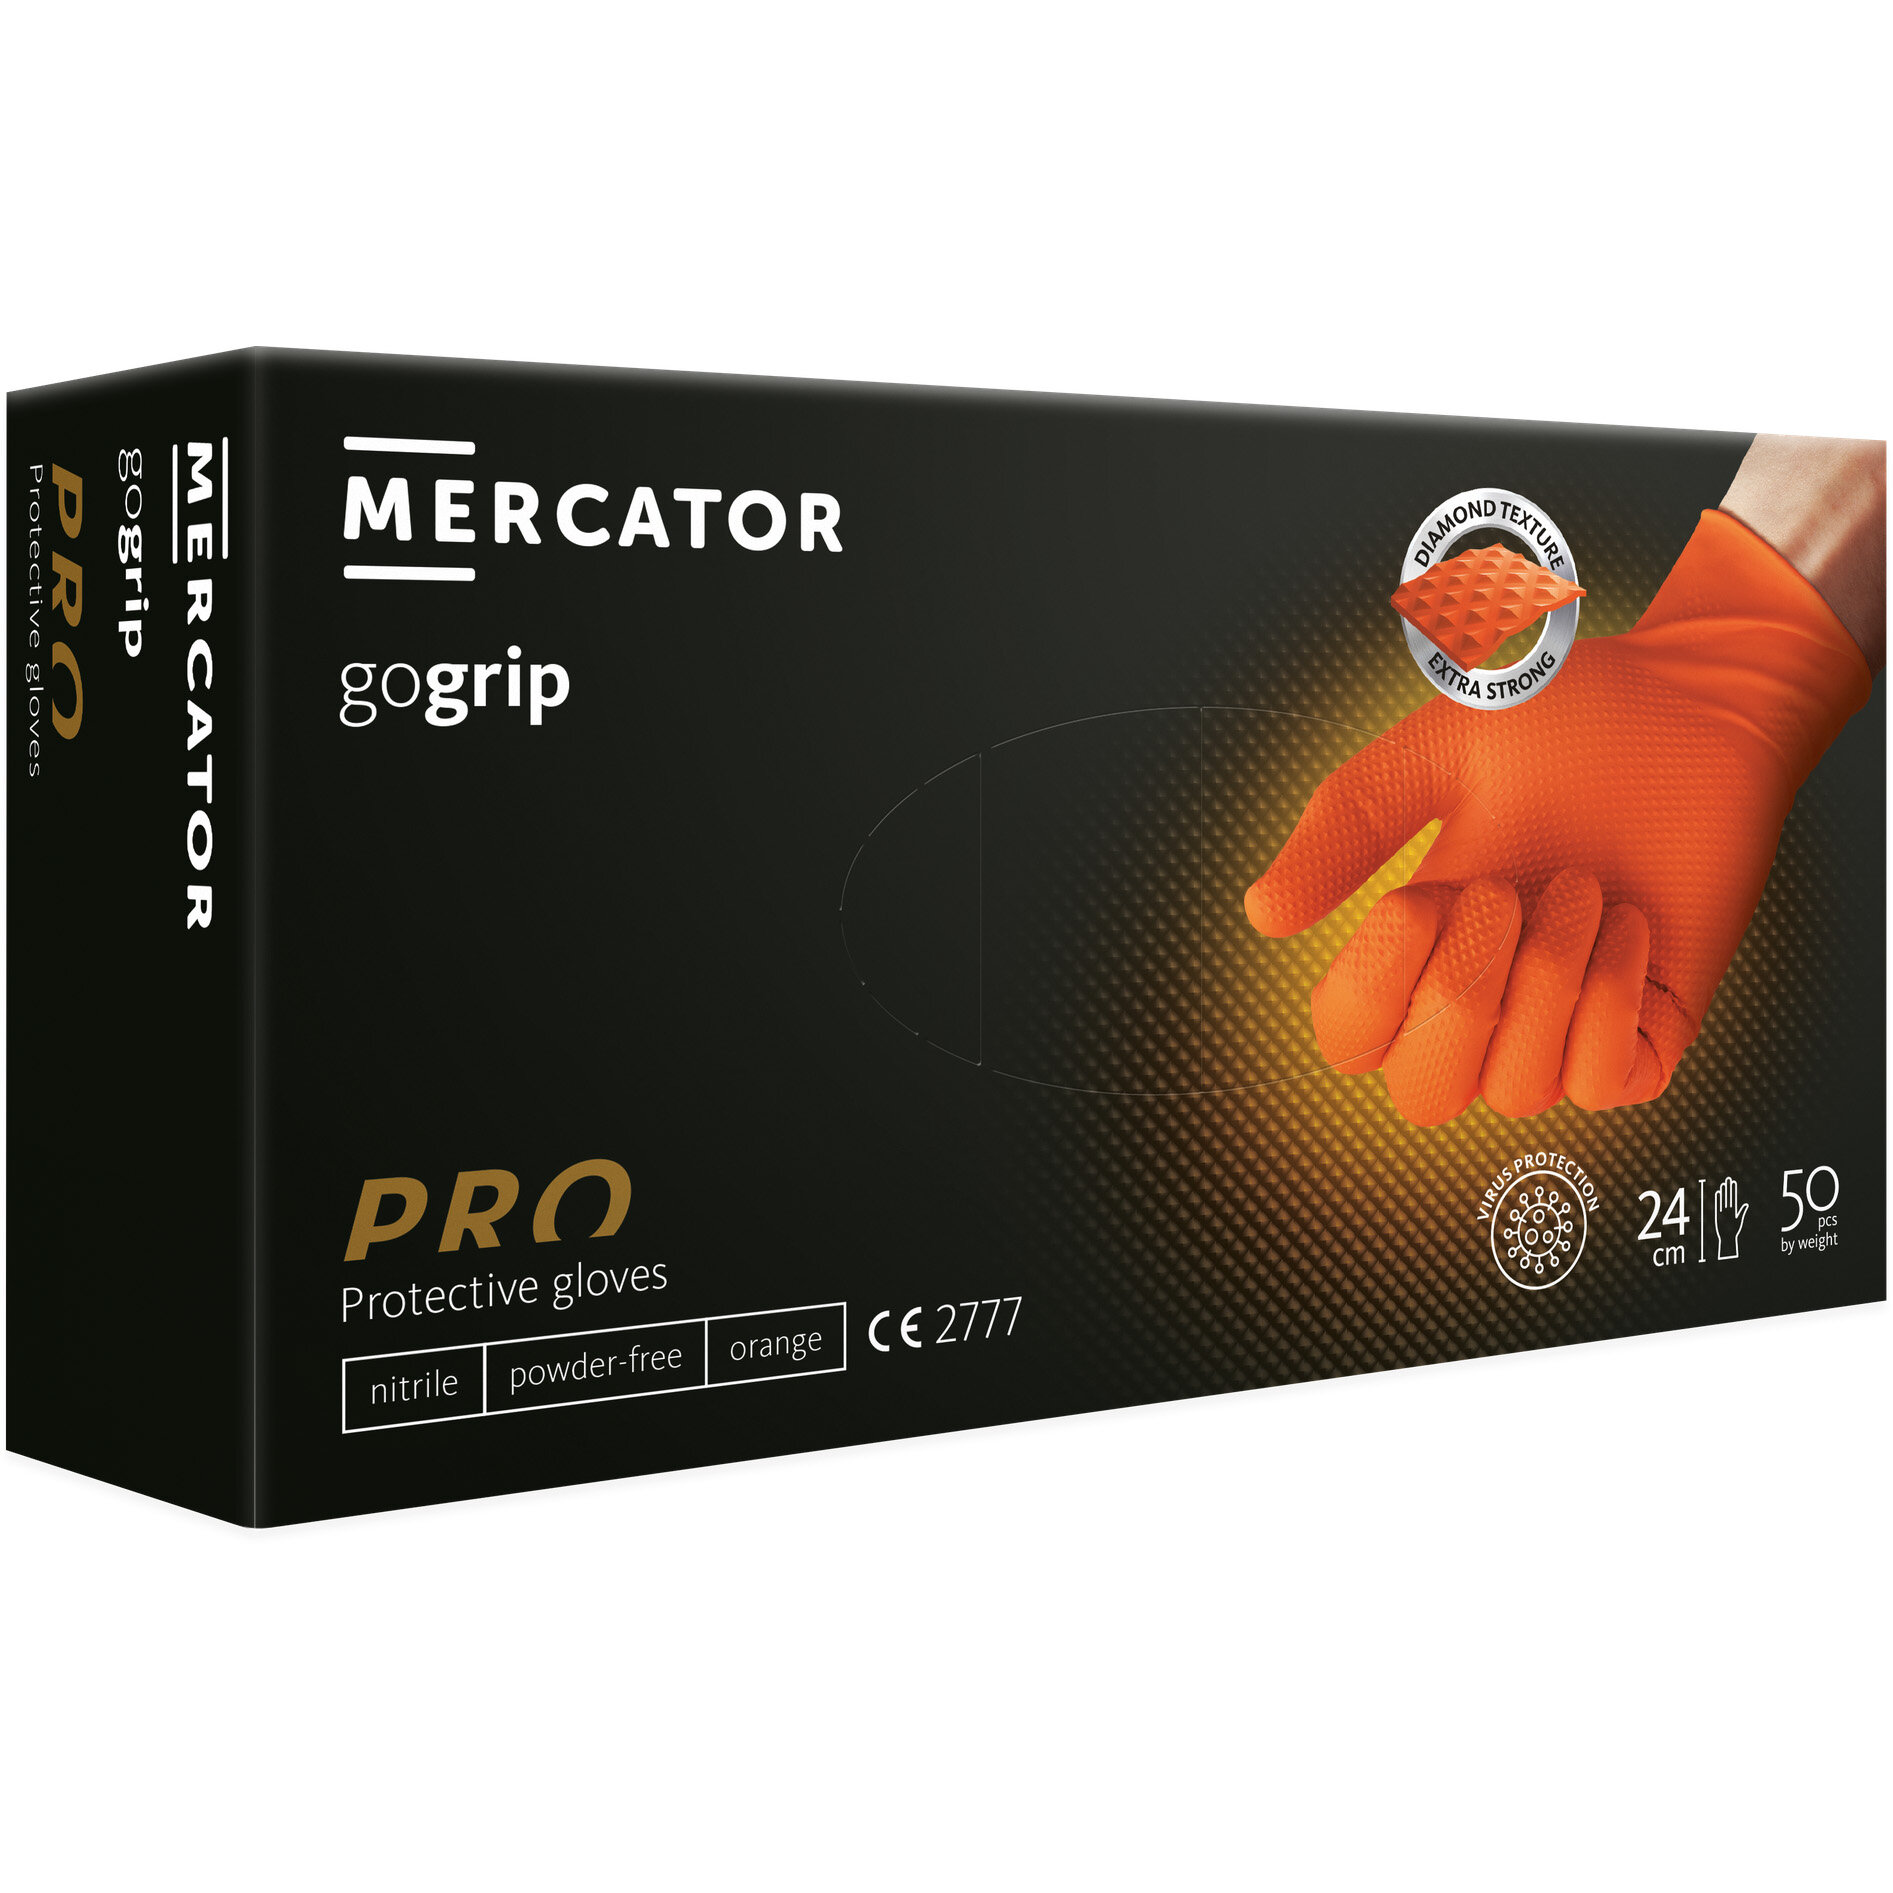 Mercator GoGrip oranžne nitrilne rokavice XS brez prahu - 50 kosov